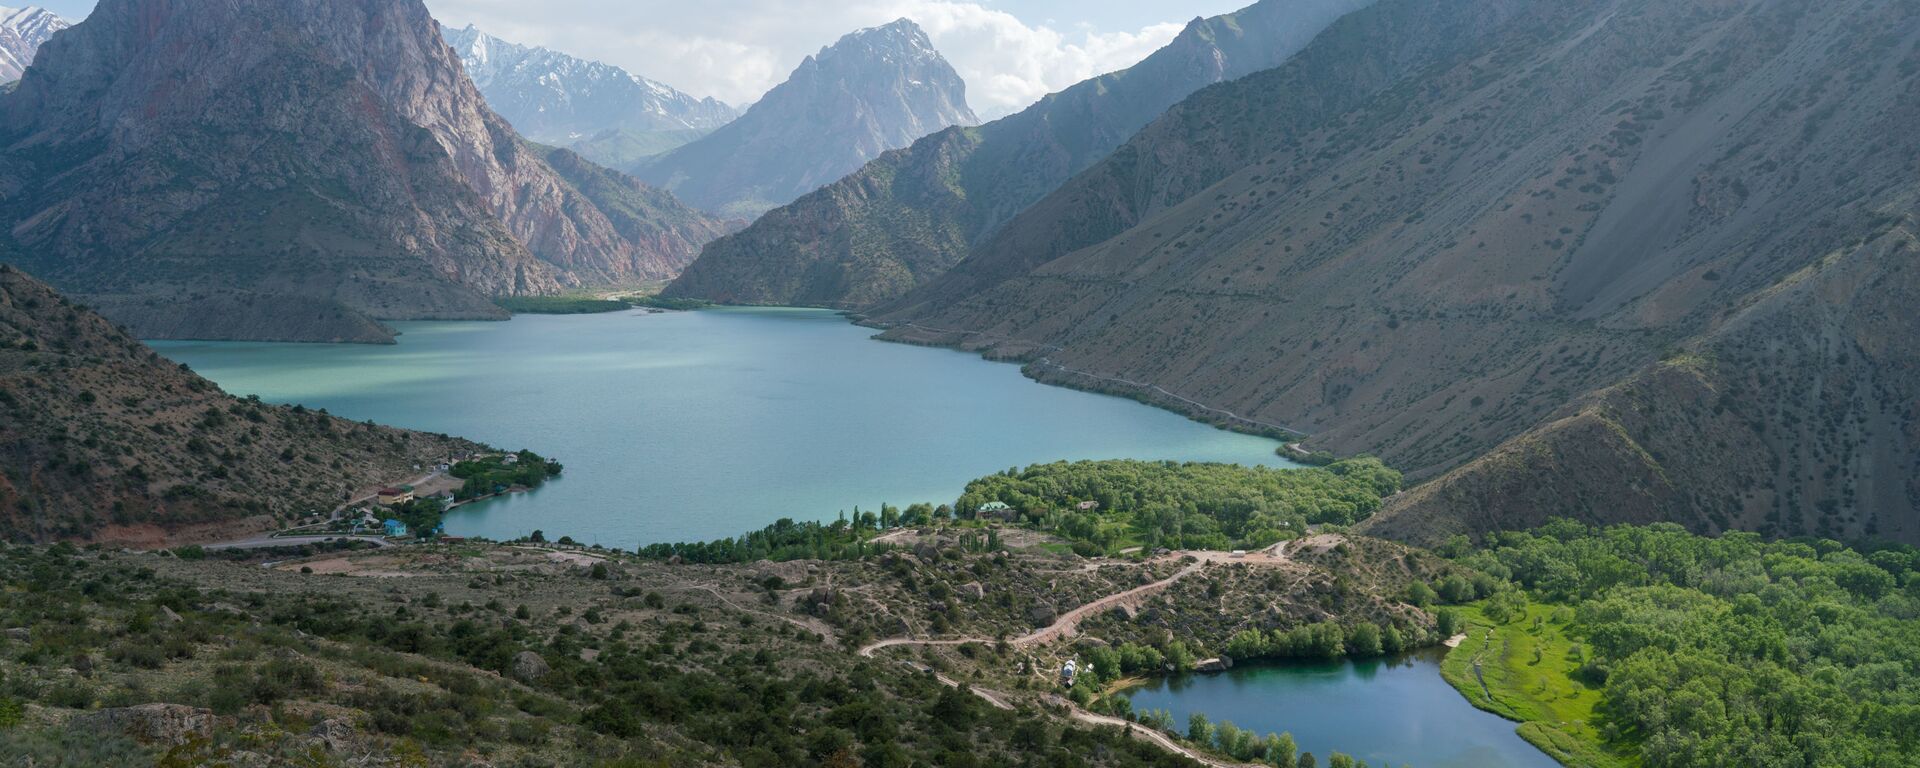 Озеро Искандеркуль и змеиное озеро, архивное фото  - Sputnik Таджикистан, 1920, 31.12.2020